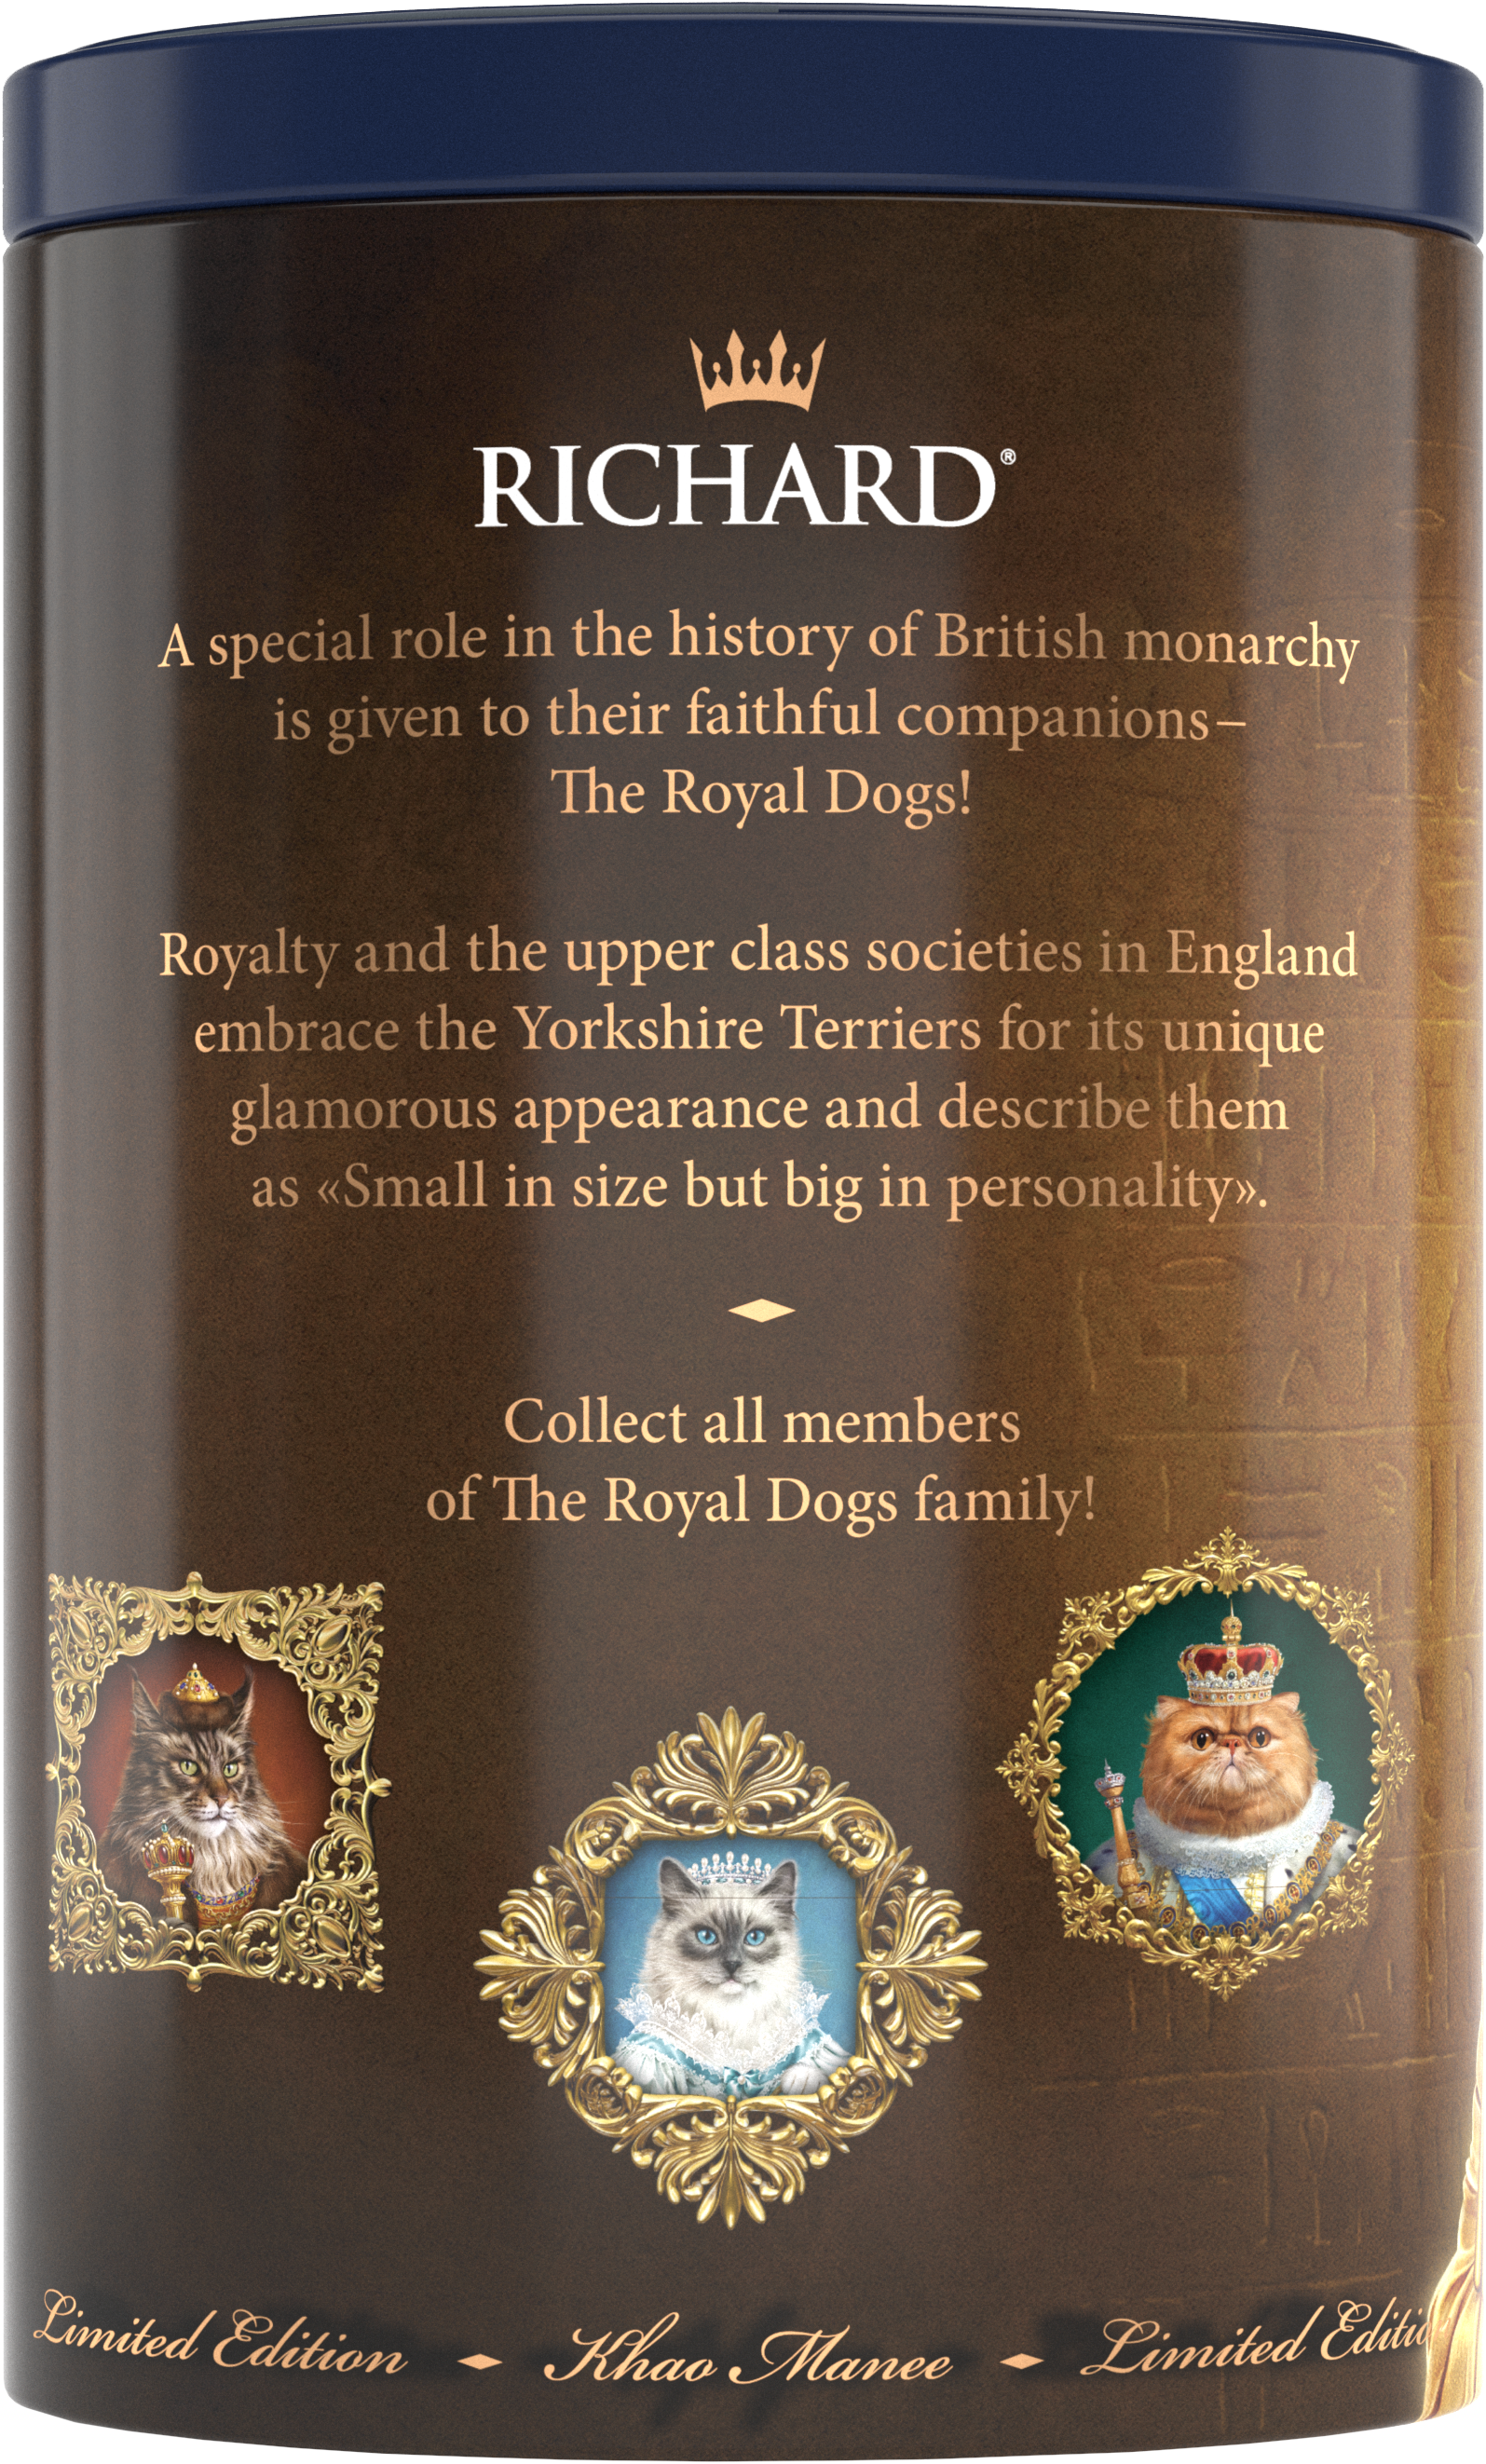 Richard Royal Macskák, fekete tea, 34g, 20 piramis-filterben, Sphynx - RichardTeavn - vásároljon a 2990.00 Ft